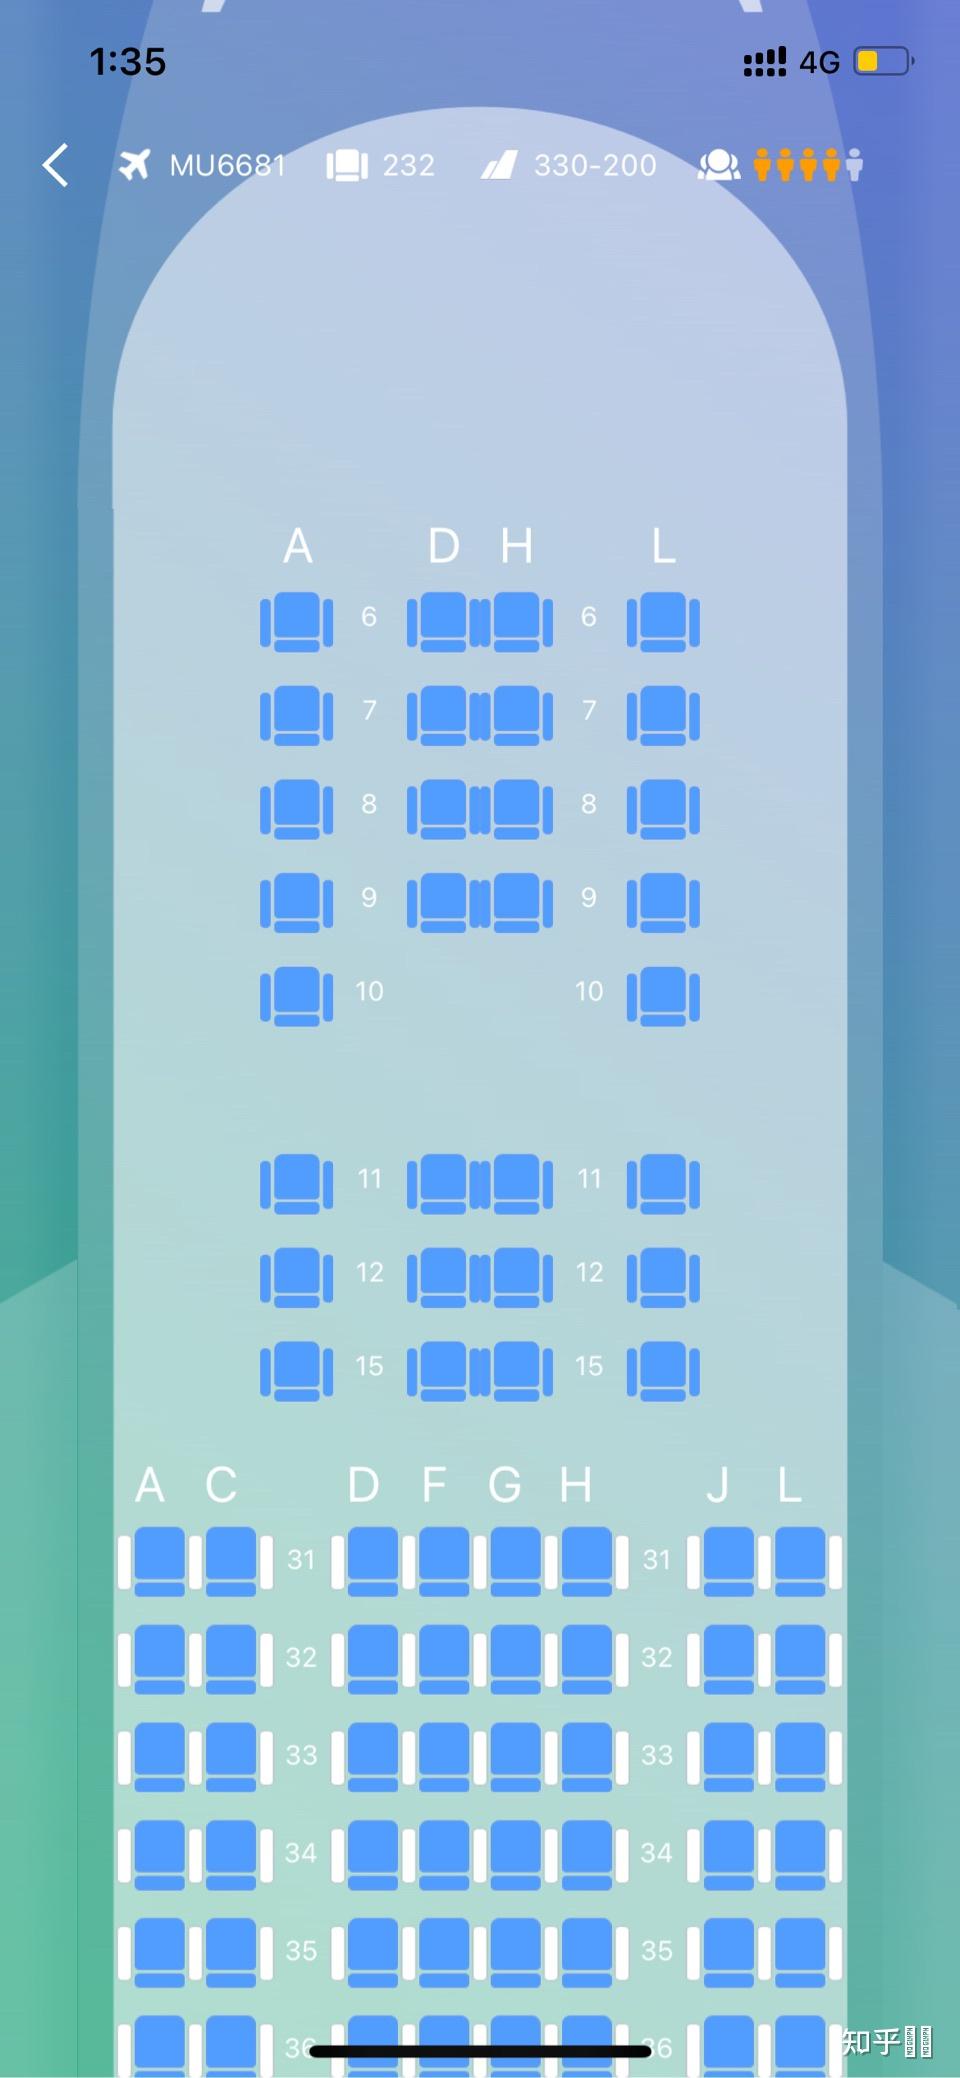 mu6681 空客332 求教如何选靠窗而且能看到大兴机场全貌的座位?